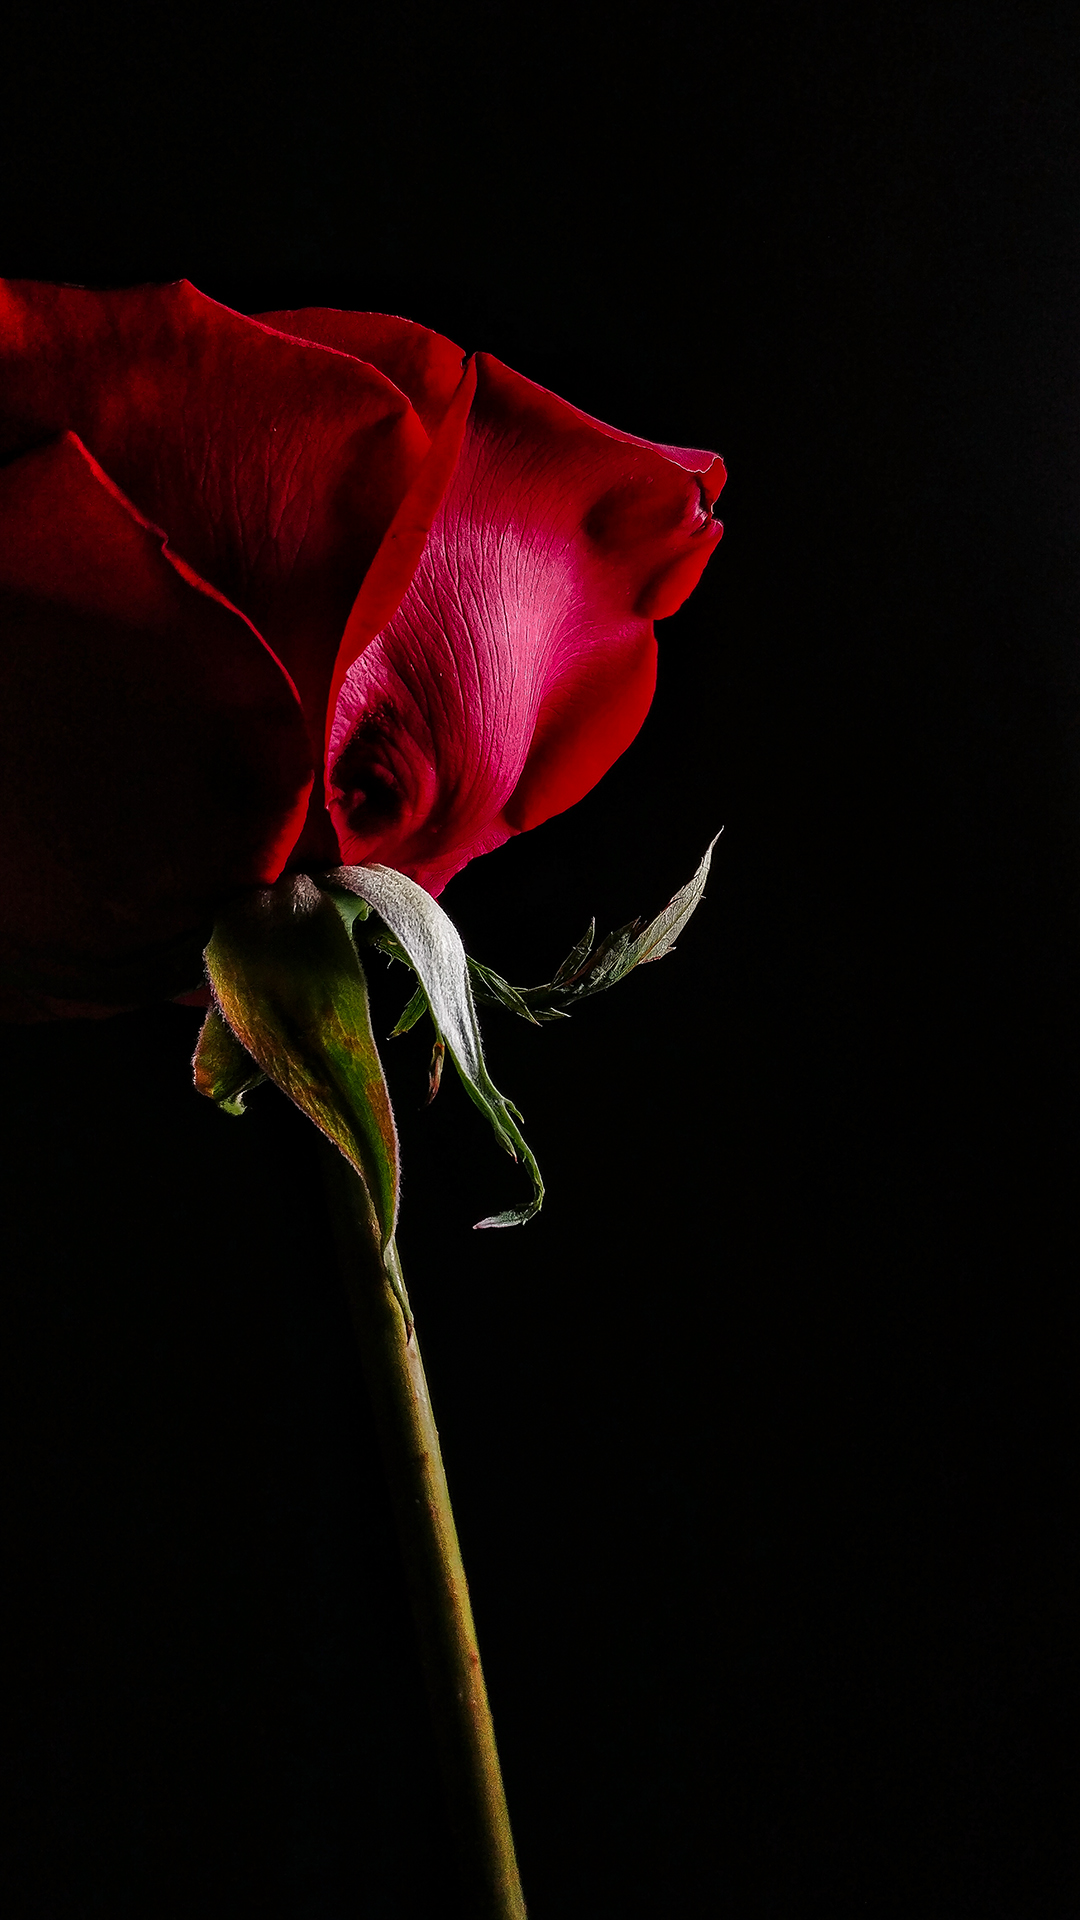 该壁纸是由一加t拍摄,在黑夜中里的玫瑰,那一抹犹如丝绸般的质感